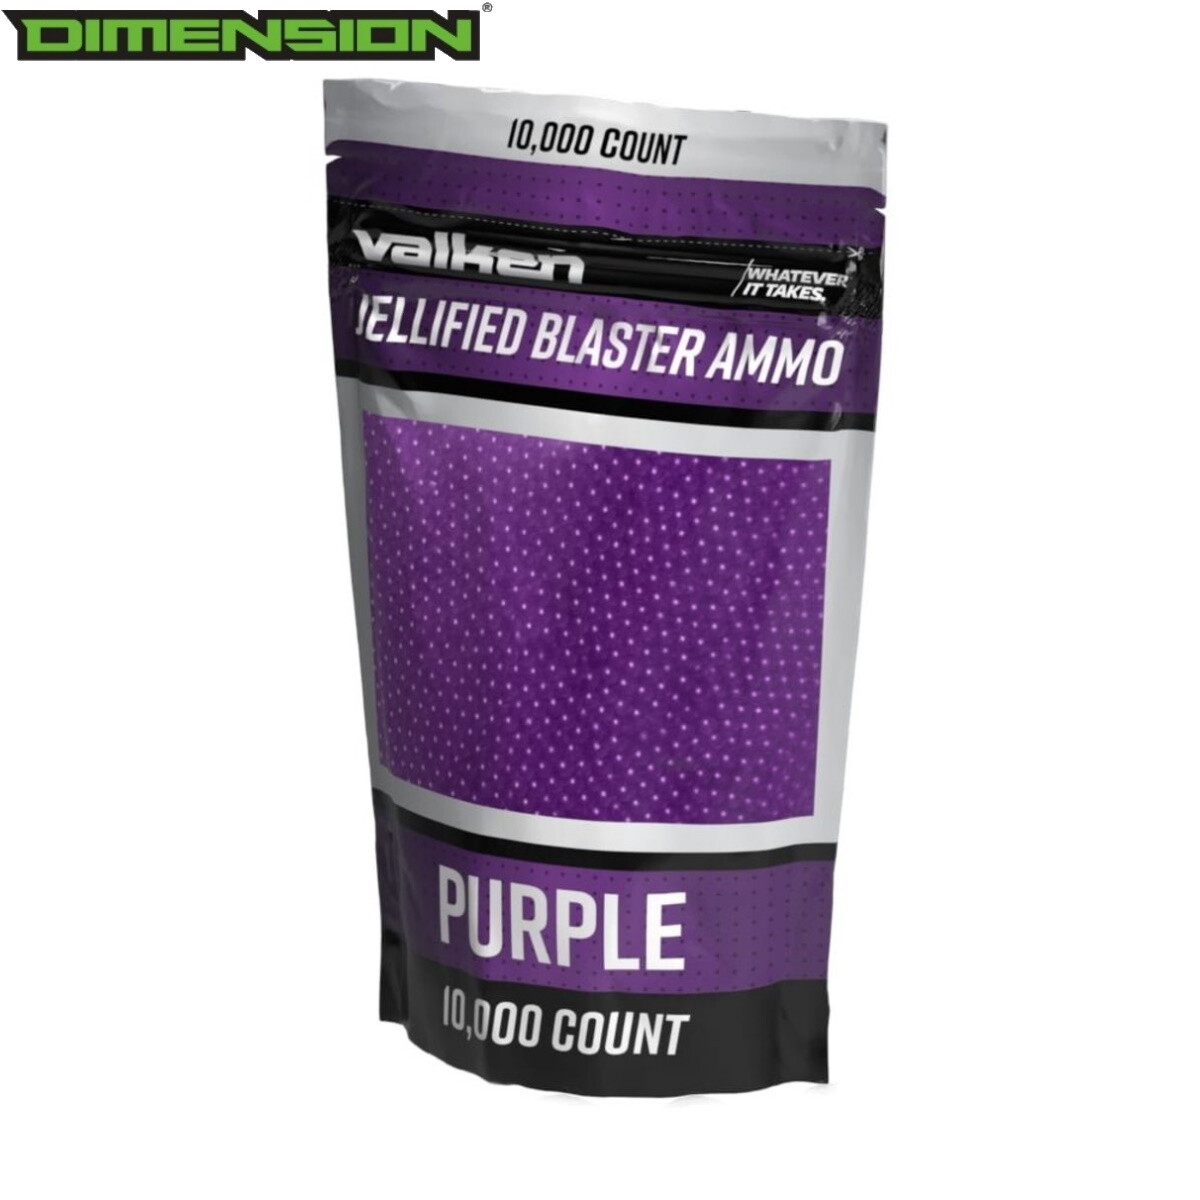 Valken Jellified Blaster Ammo -10,000rds - Purple